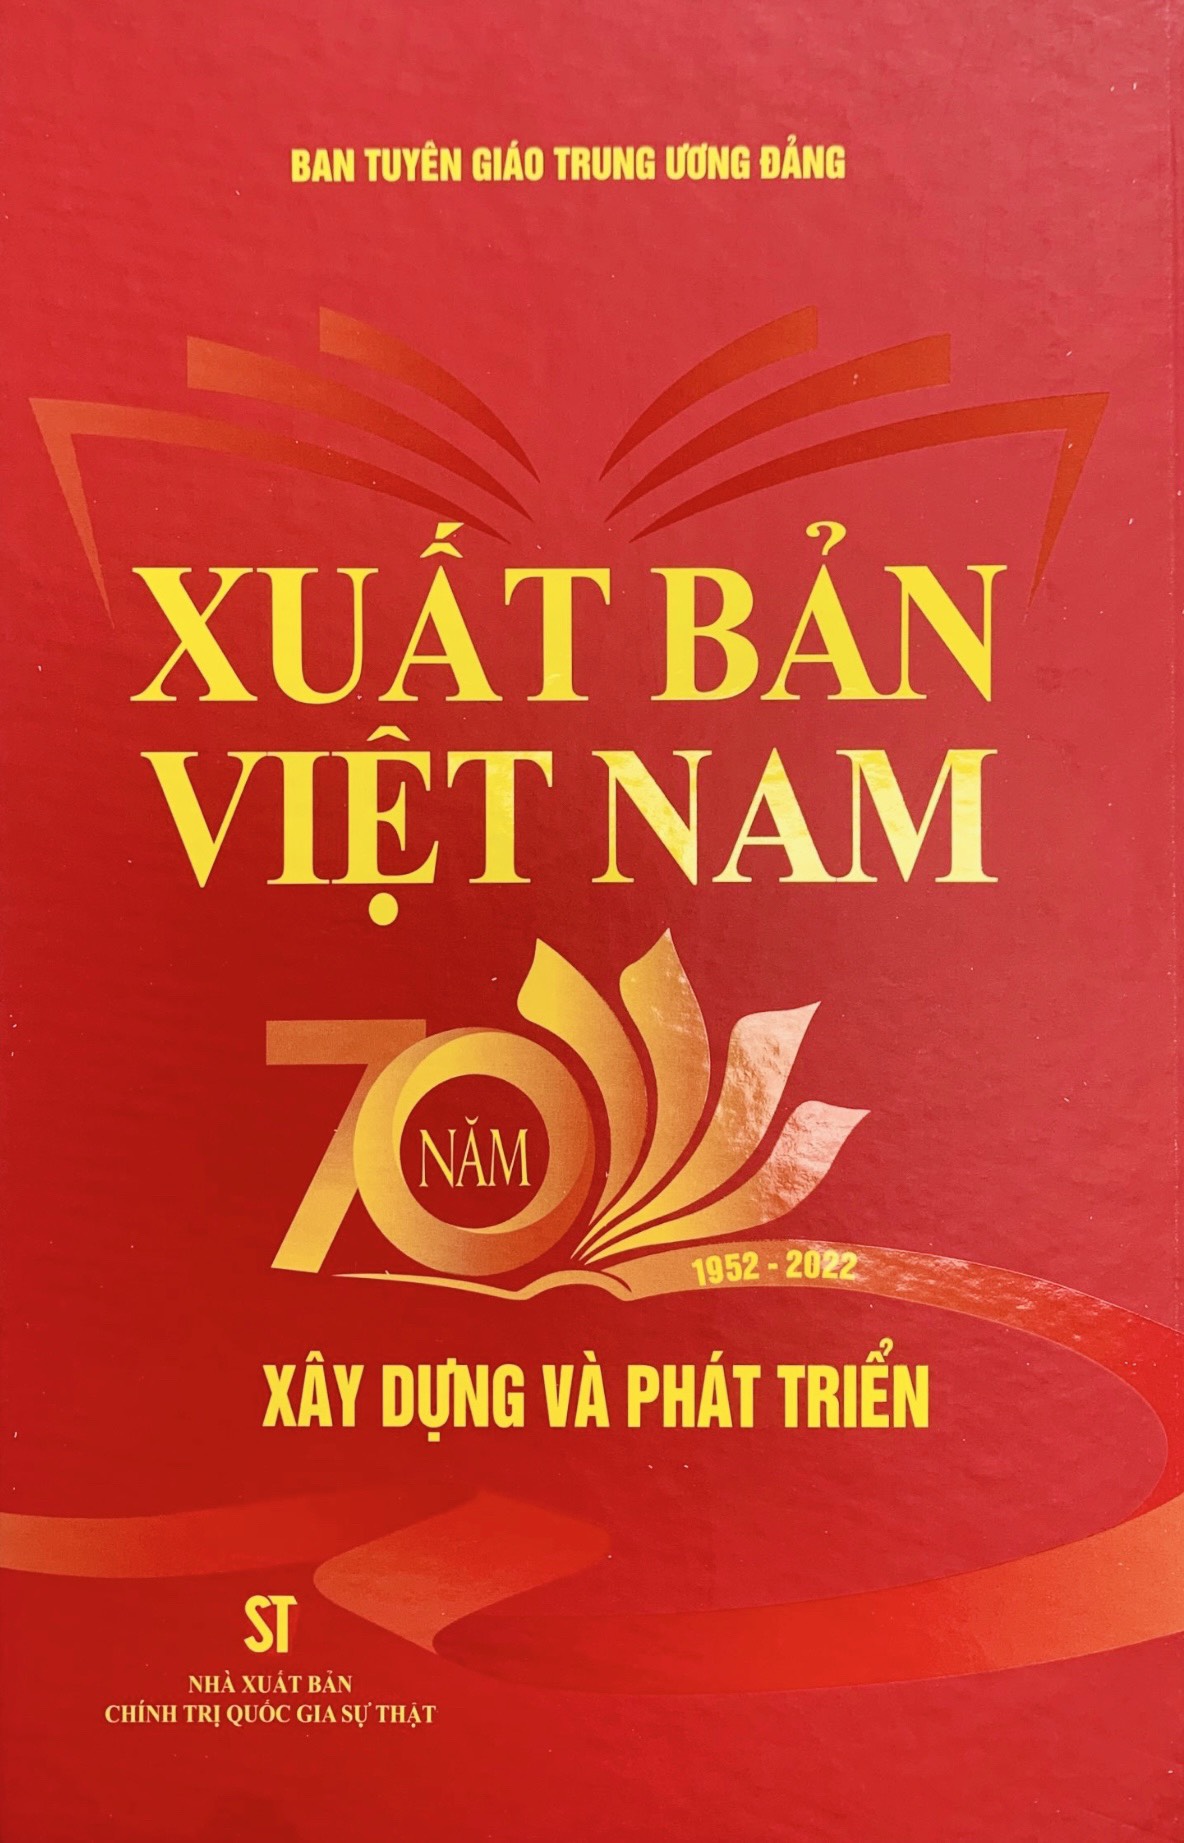 Xuất bản Việt Nam - 70 năm xây dựng và phát triển (1952 - 2022)